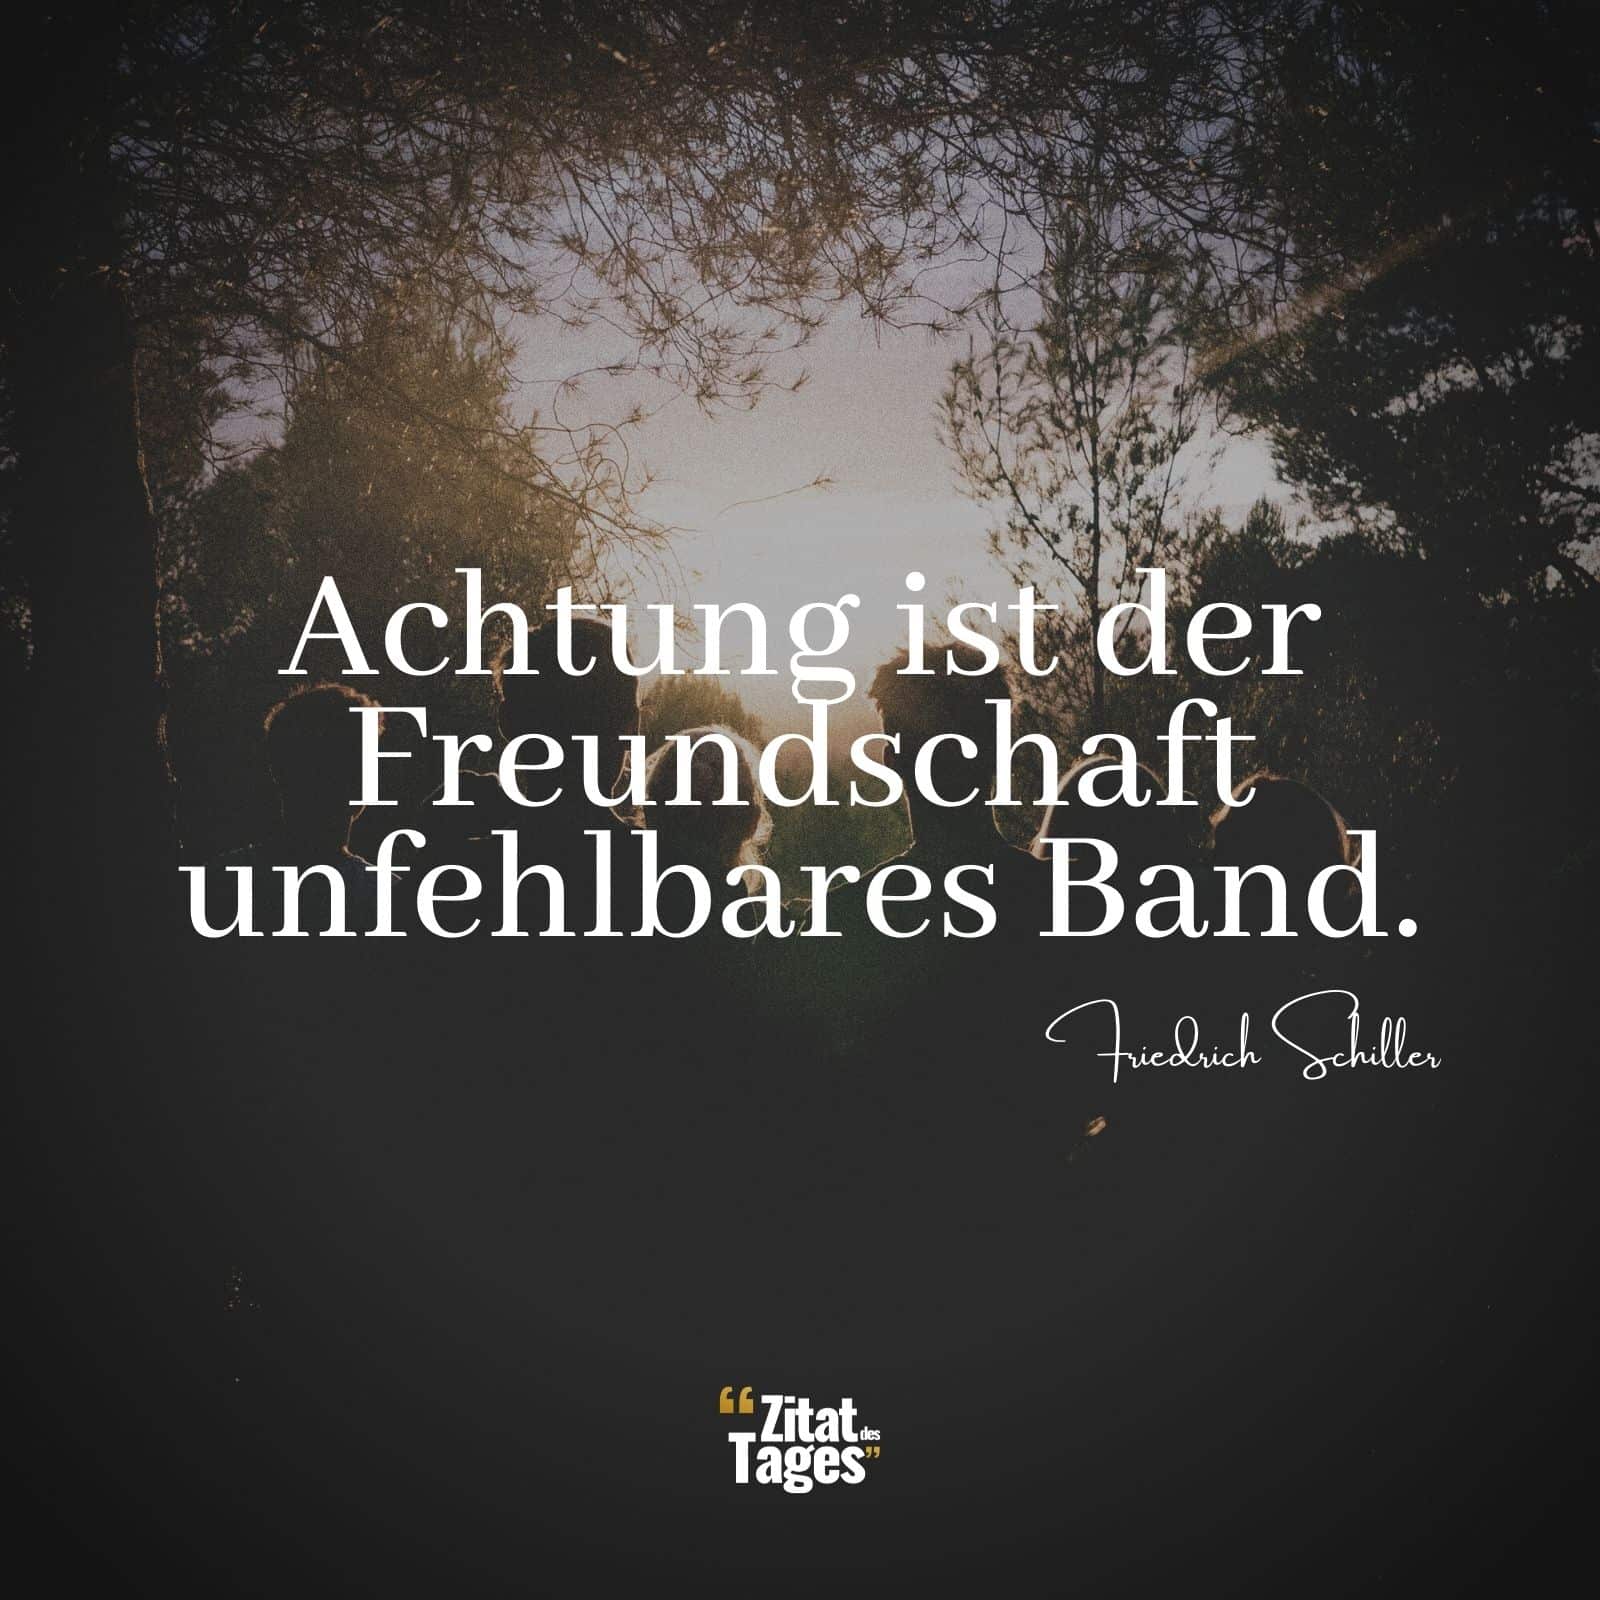 Achtung ist der Freundschaft unfehlbares Band. - Friedrich Schiller